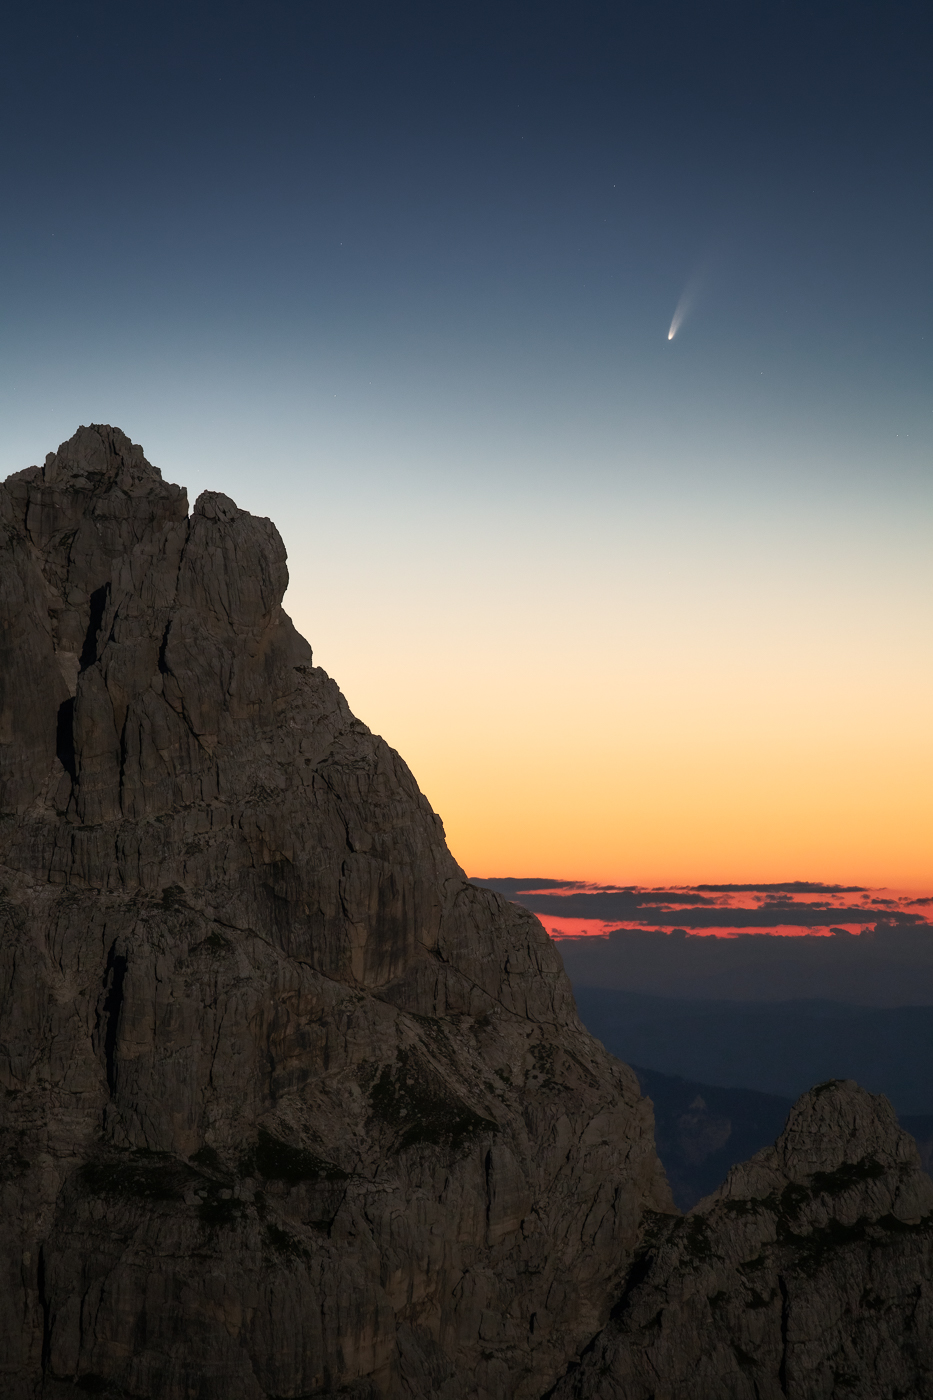 Flebile ma ancora accesa, resiste in cielo la cometa C/2020 F3 (NEOWISE) prima dell’alba, fra le guglie delle Alpi Giulie illuminate dalla Luna piena. Alpi Giulie, Italia.